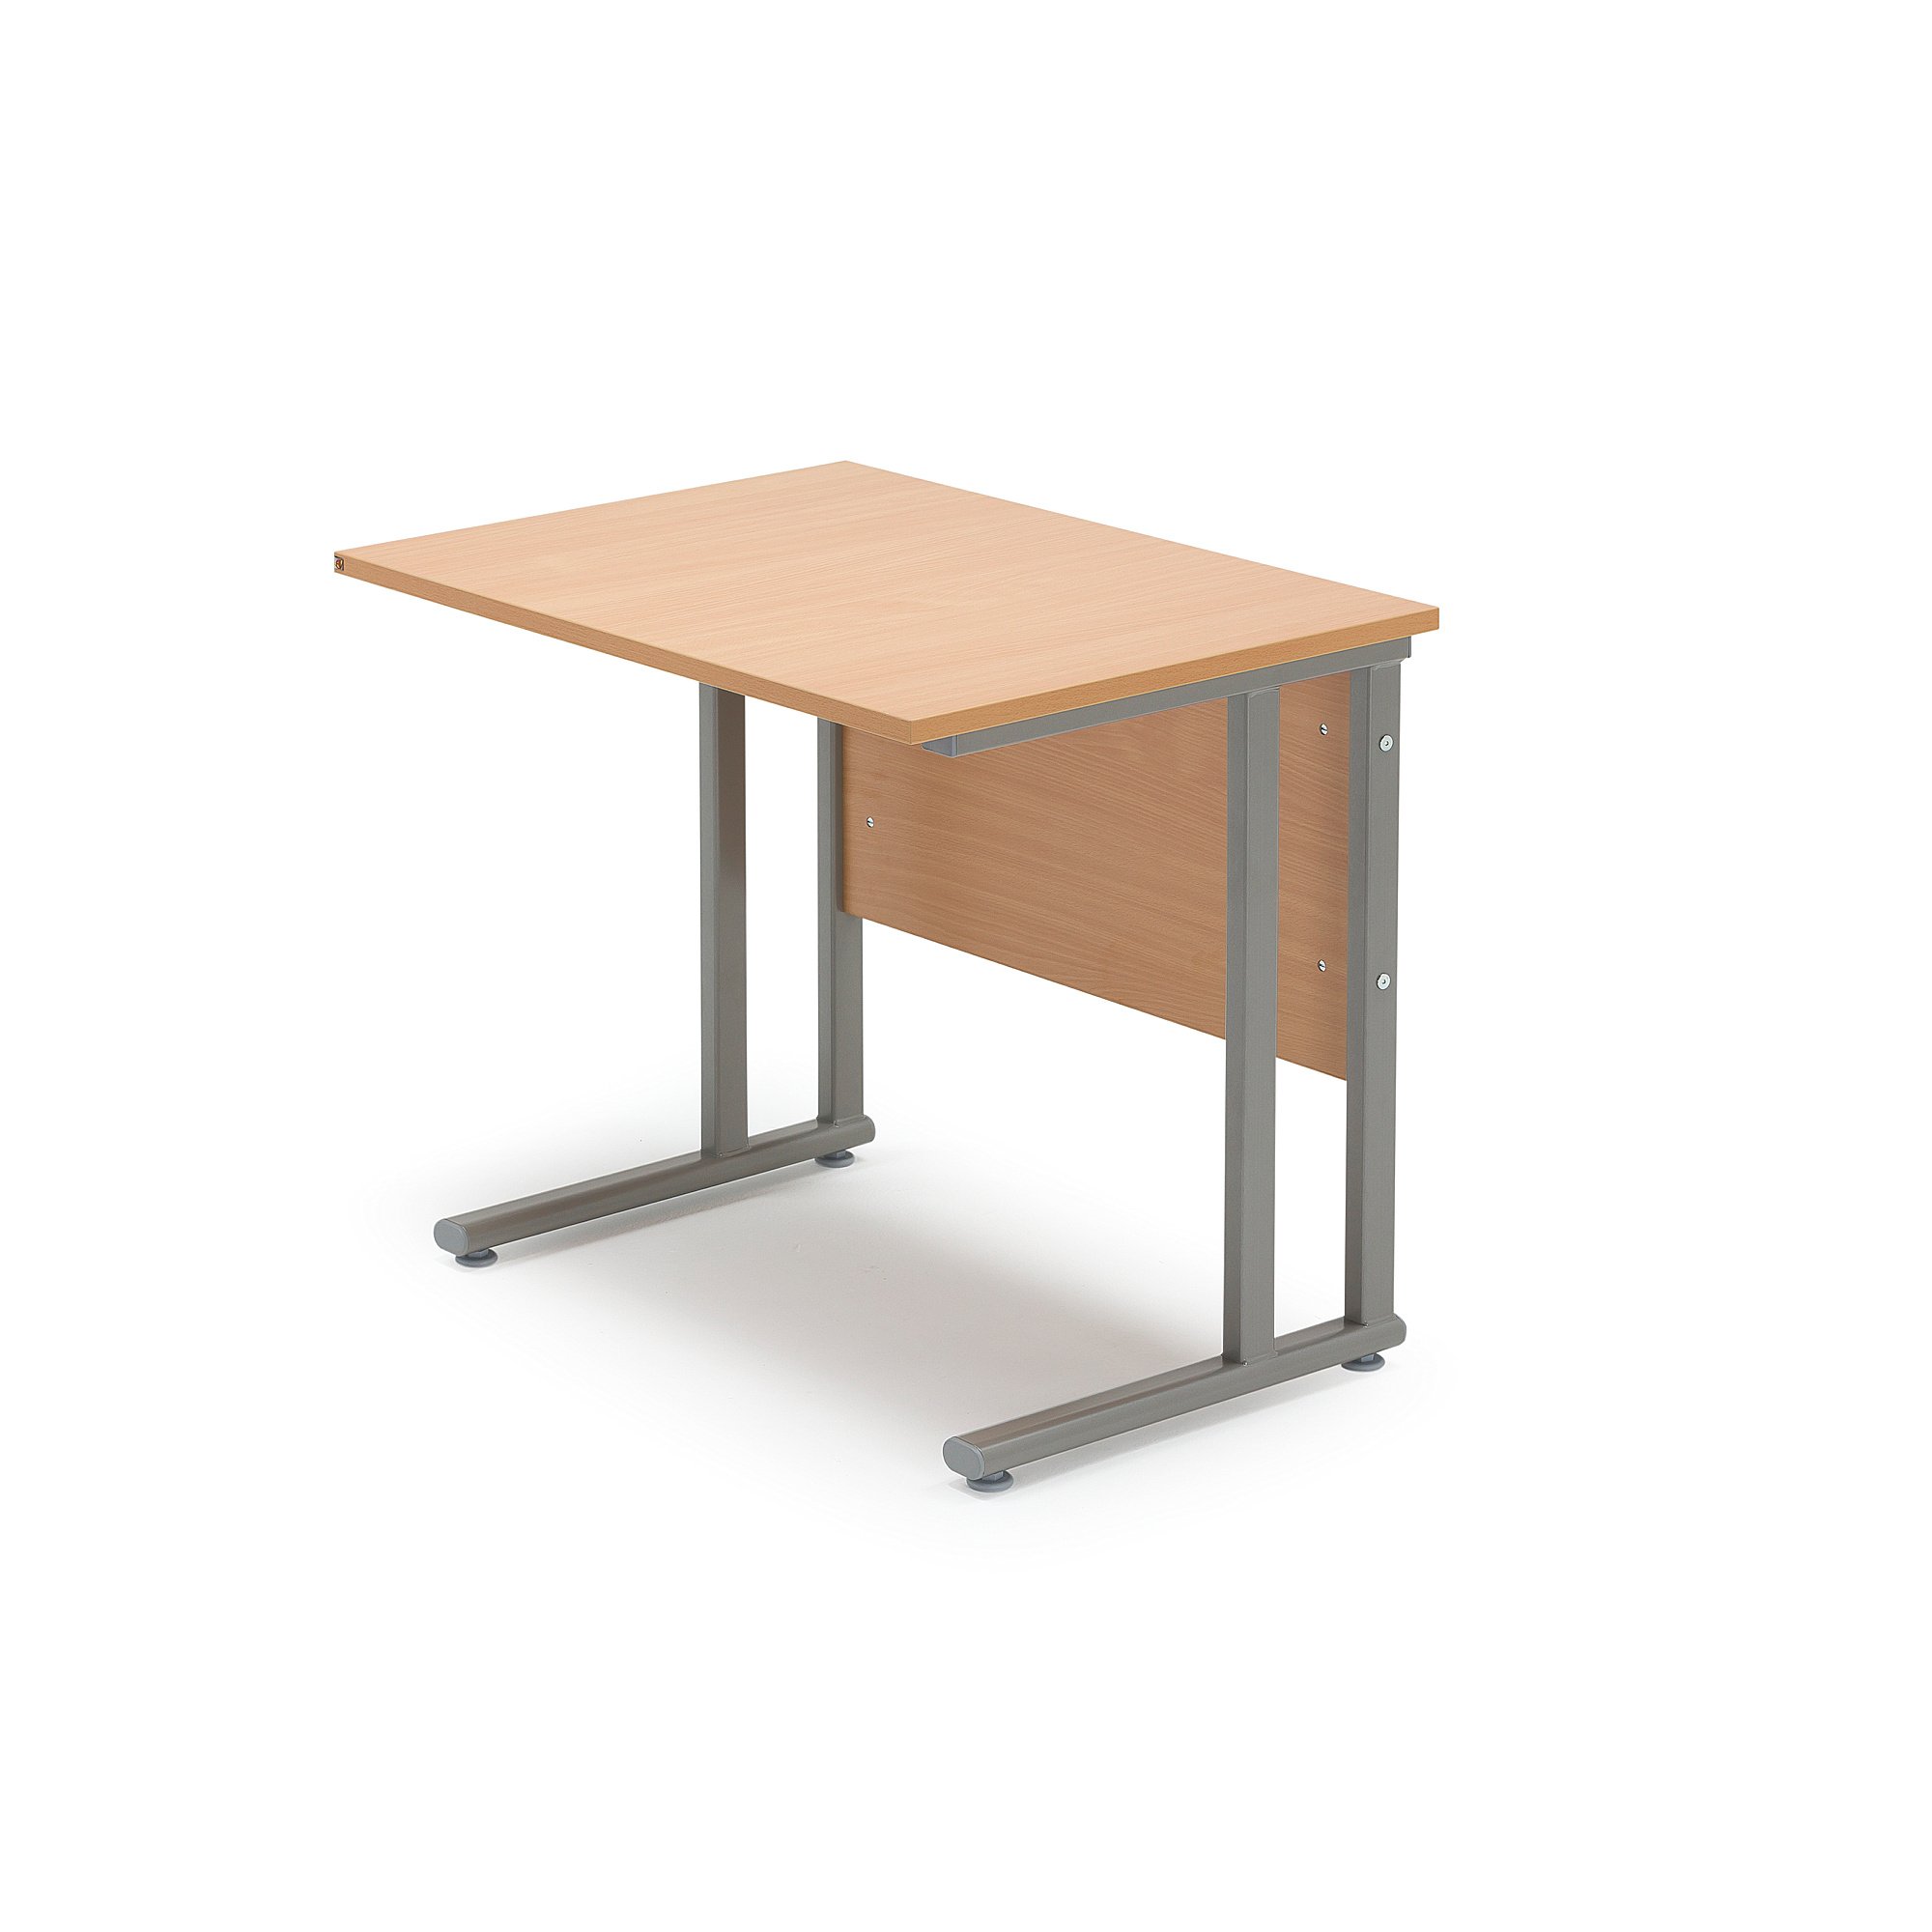 Přídavný stůl FLEXUS, 800x600 mm, buk